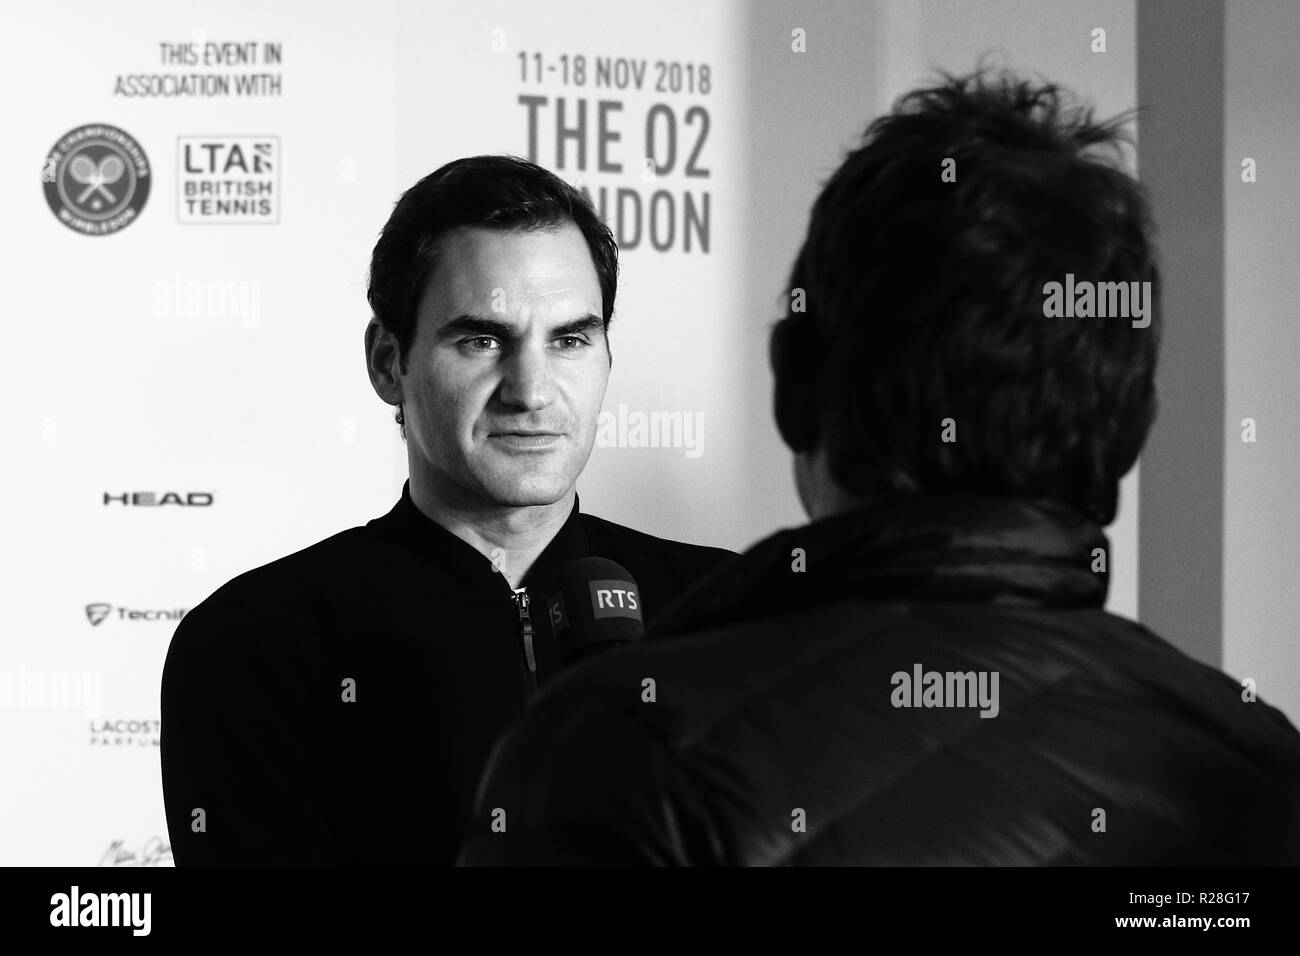 Londres, ANGLETERRE - 17 novembre : Roger Federer La Suisse de donner des entrevues aux médias après sa défaite contre Alexander Zverev de l'Allemagne au cours de l'ATP World Tour finale au O2 Arena le 17 novembre 2018 à Londres, en Angleterre. Photo par Paul Cunningham Crédit : Paul Cunningham/Alamy Live News Banque D'Images